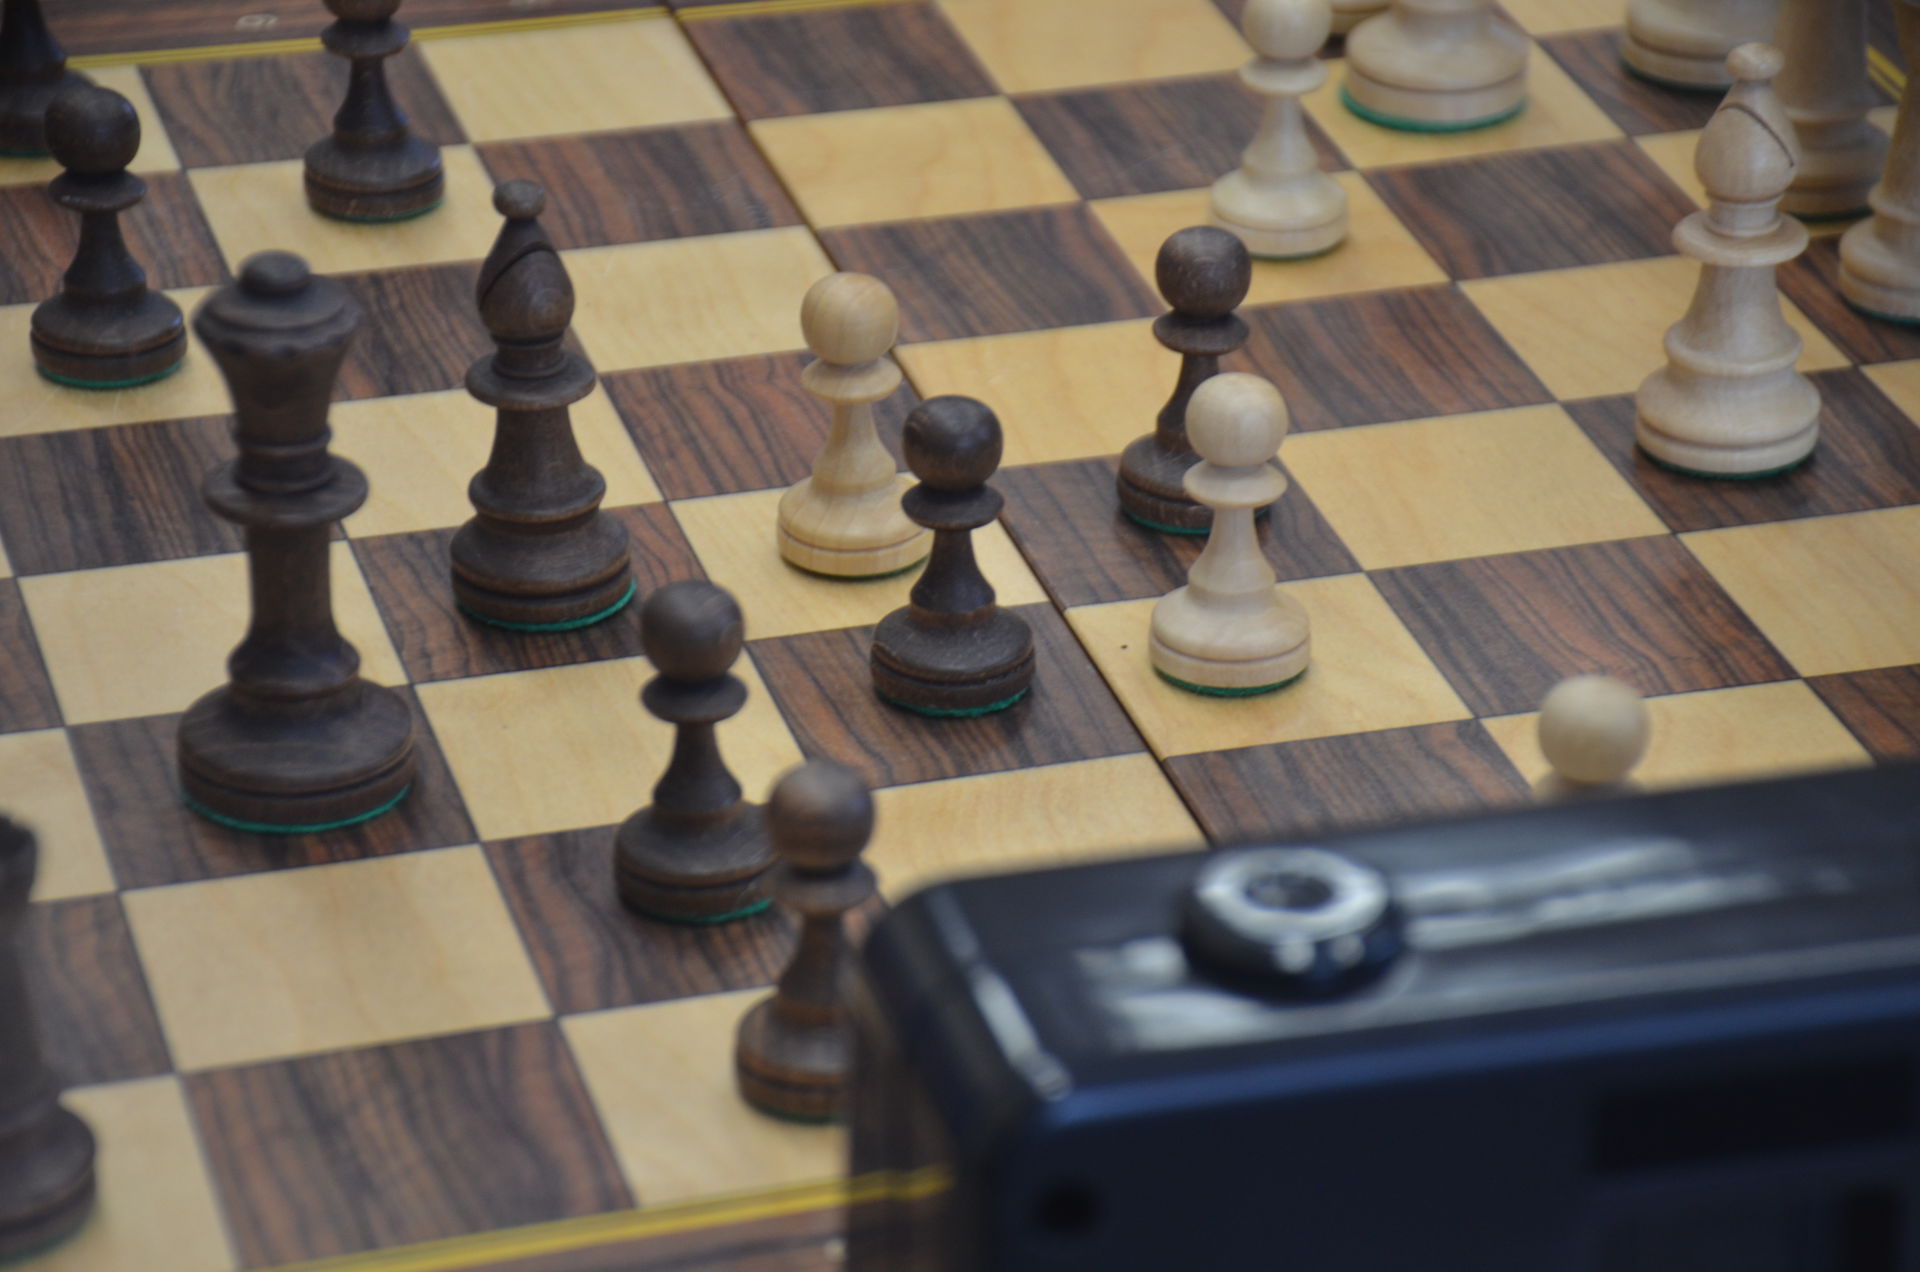 В Агрызе определились победители турнира по шахматам среди пенсионеров